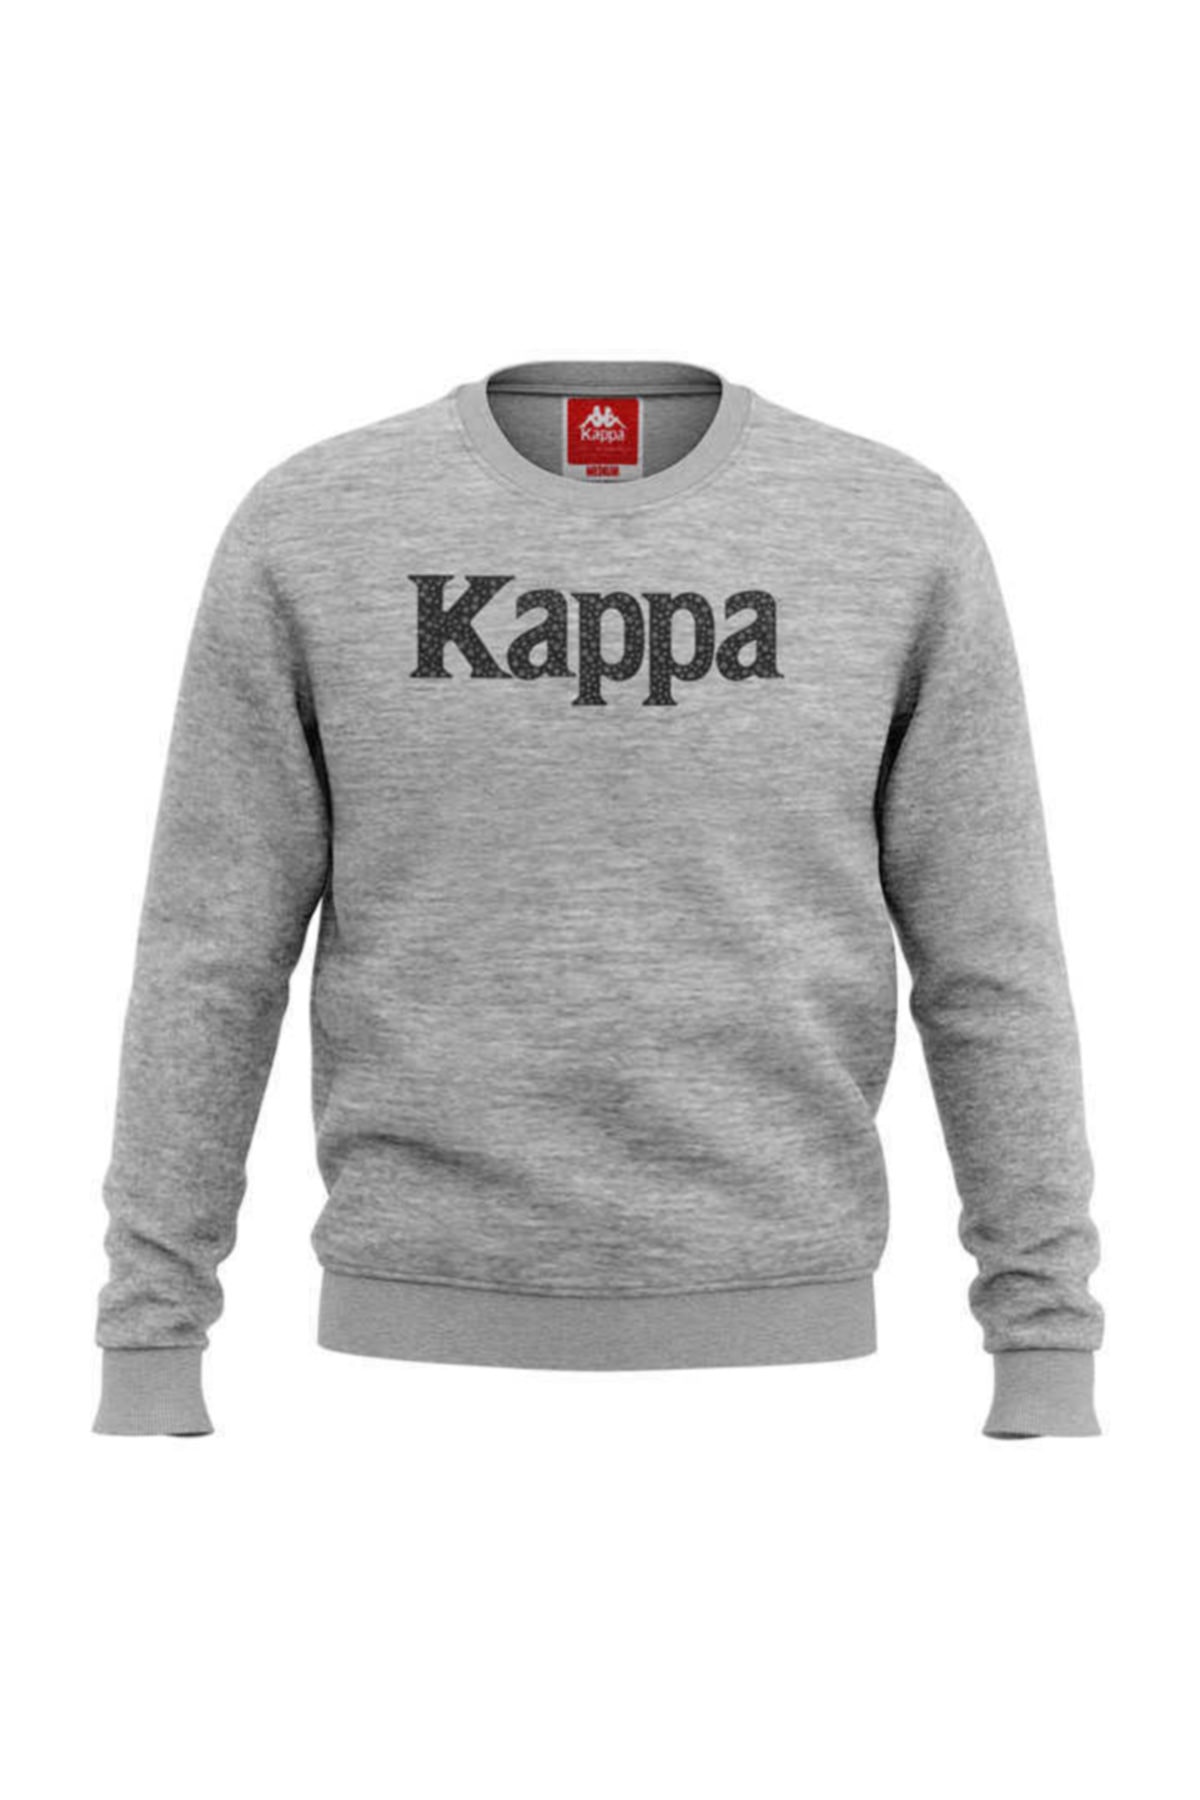 Kappa Kadın Sweatshirt Crytal